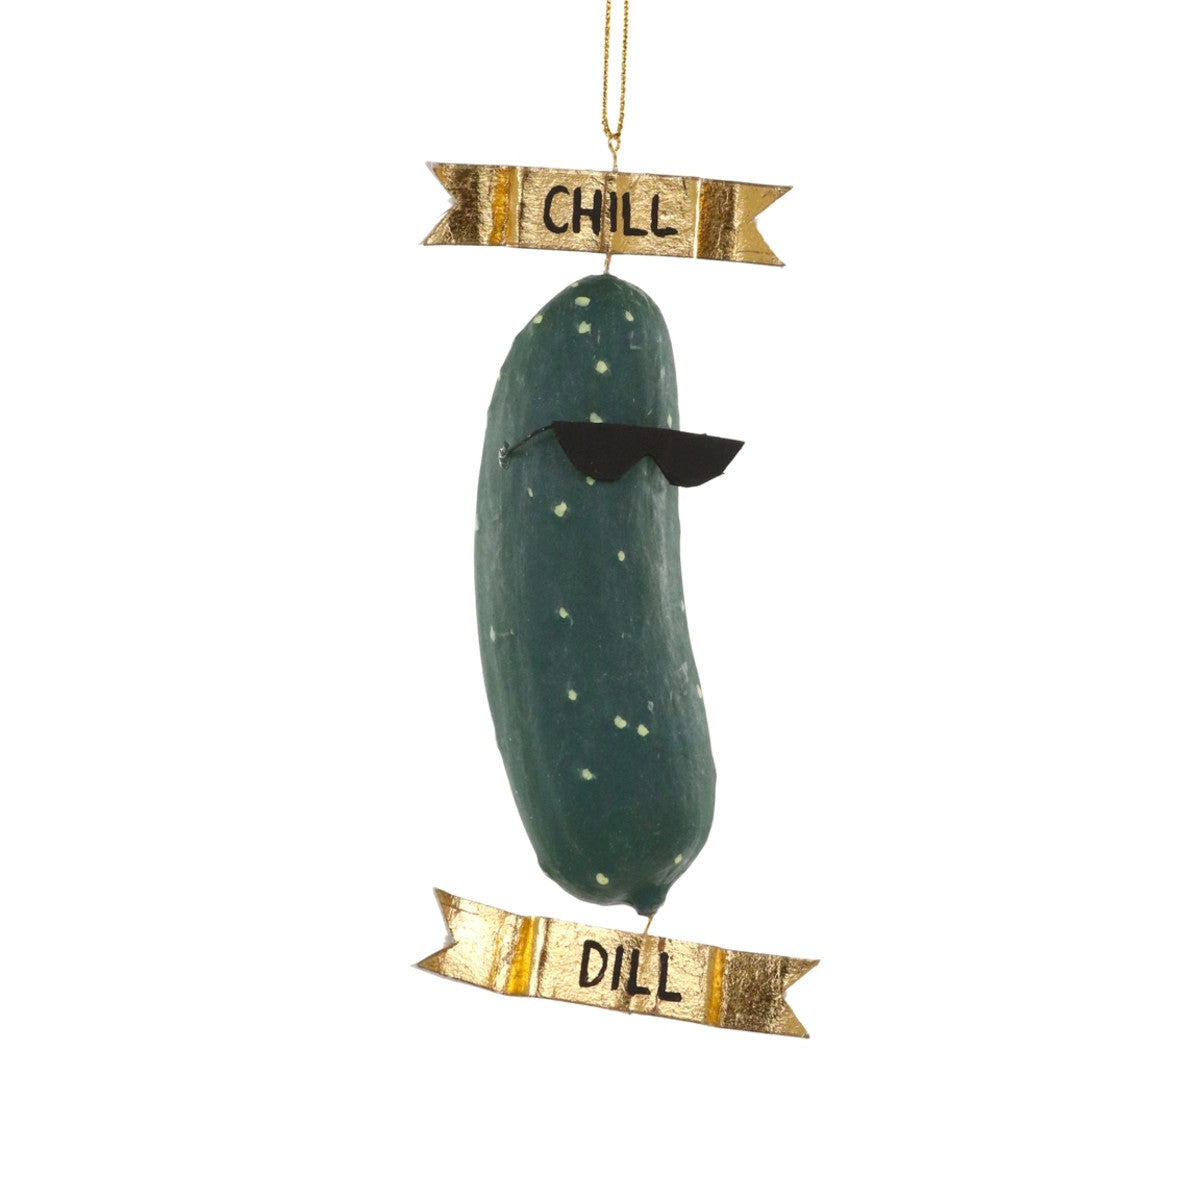 Chill Dill Ornament